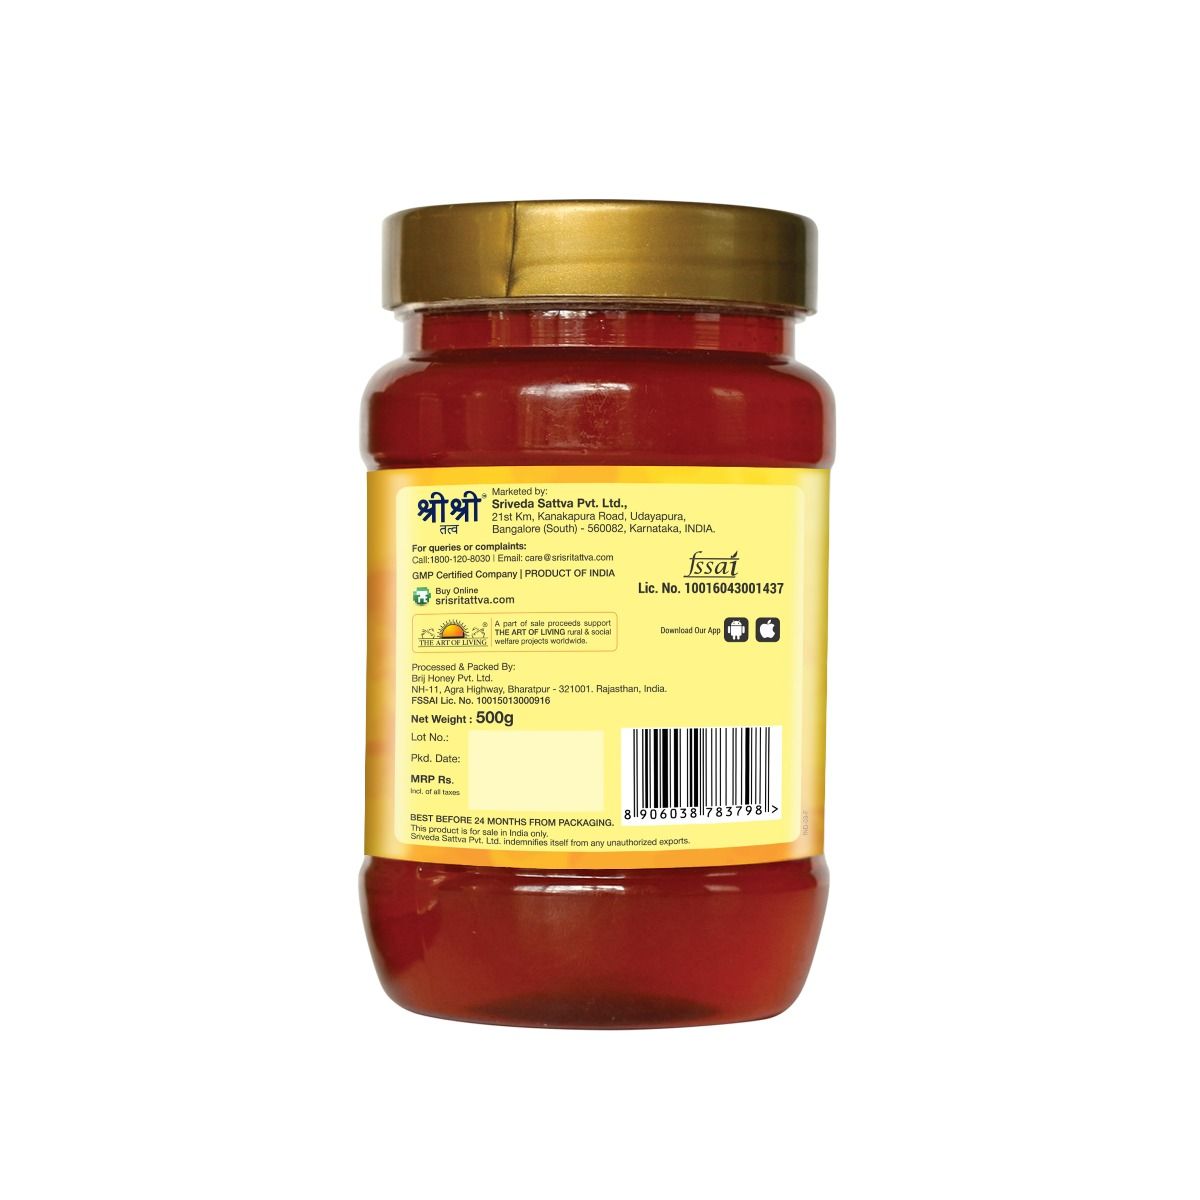 Sri Sri Tattva Honey - 100% Natural, 500 gm, Pack of 1 